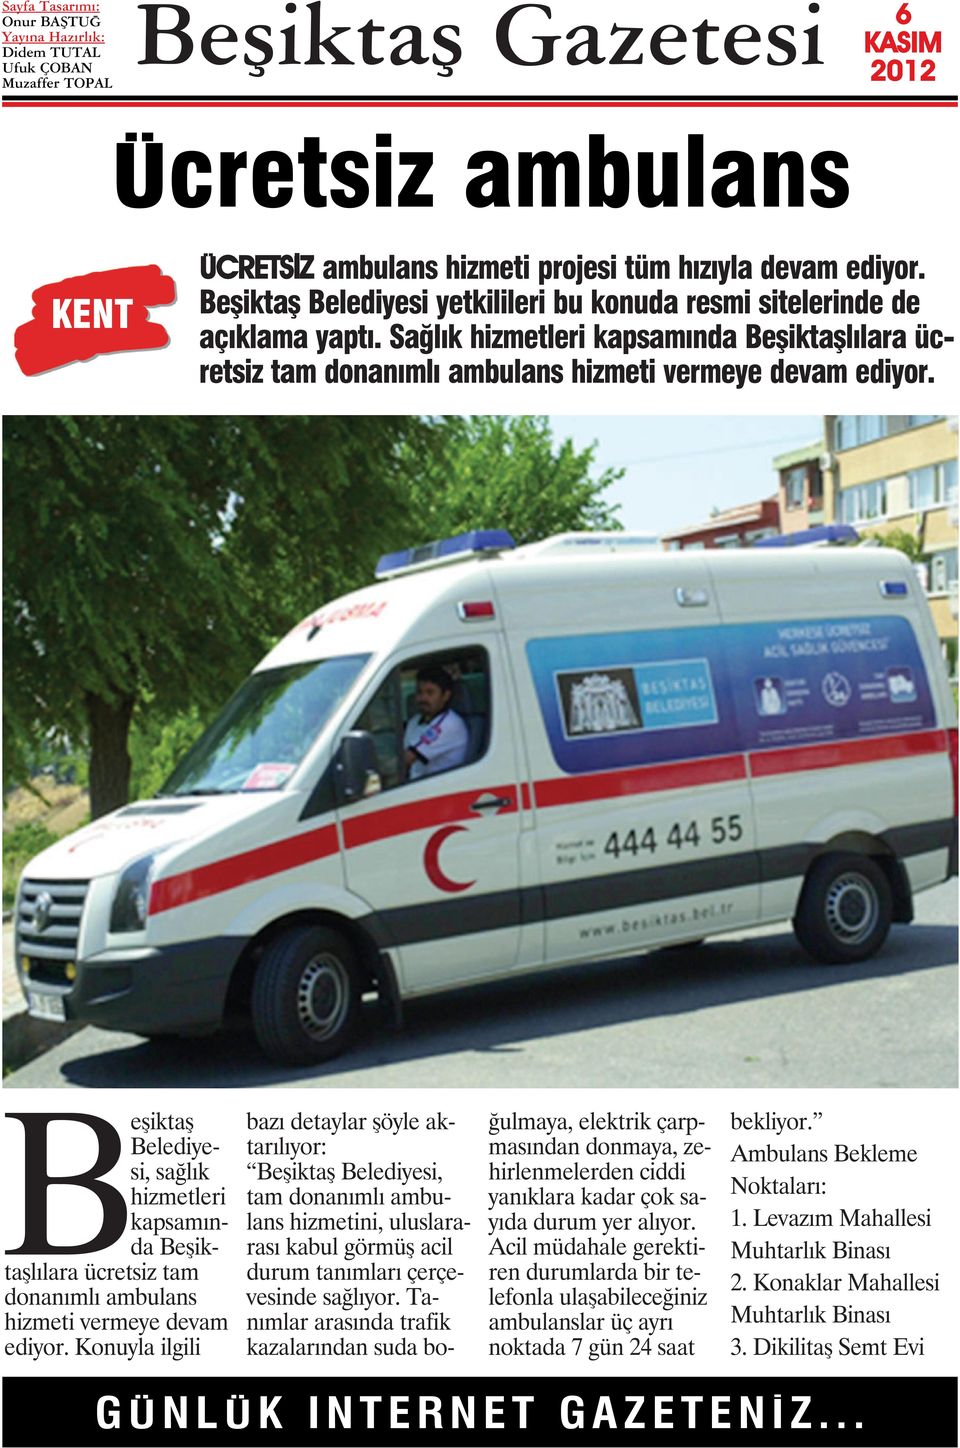 Beşiktaş Belediyesi, sağlık hizmetleri kapsamında Beşiktaşlılara ücretsiz tam donanımlı ambulans hizmeti vermeye devam ediyor.